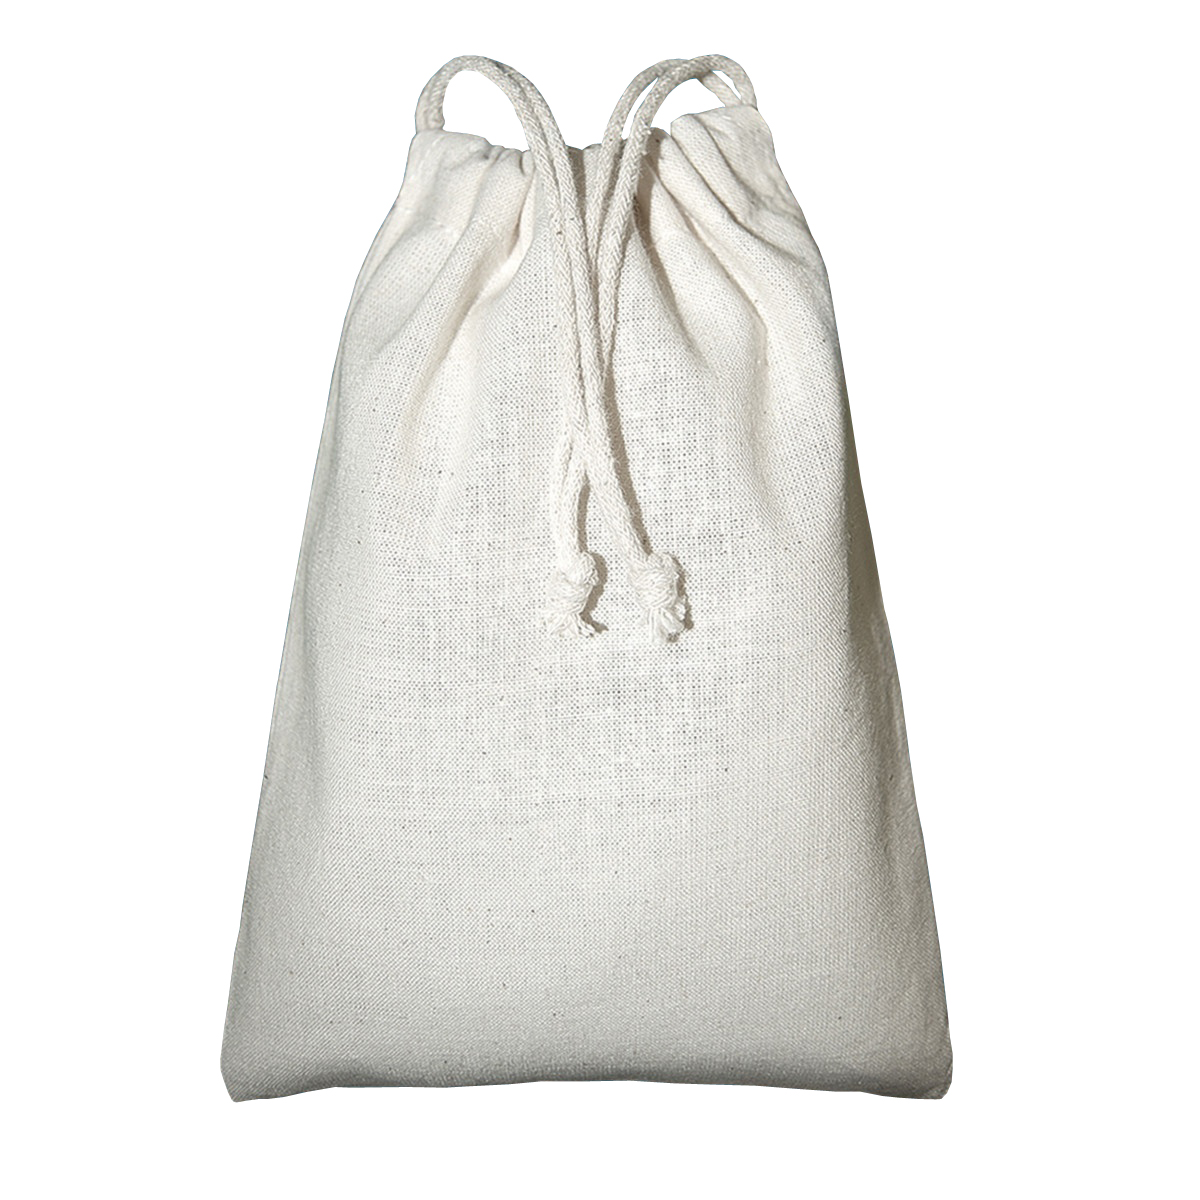 Mochila Saco Bags By Jassz Spruce - blanco - 